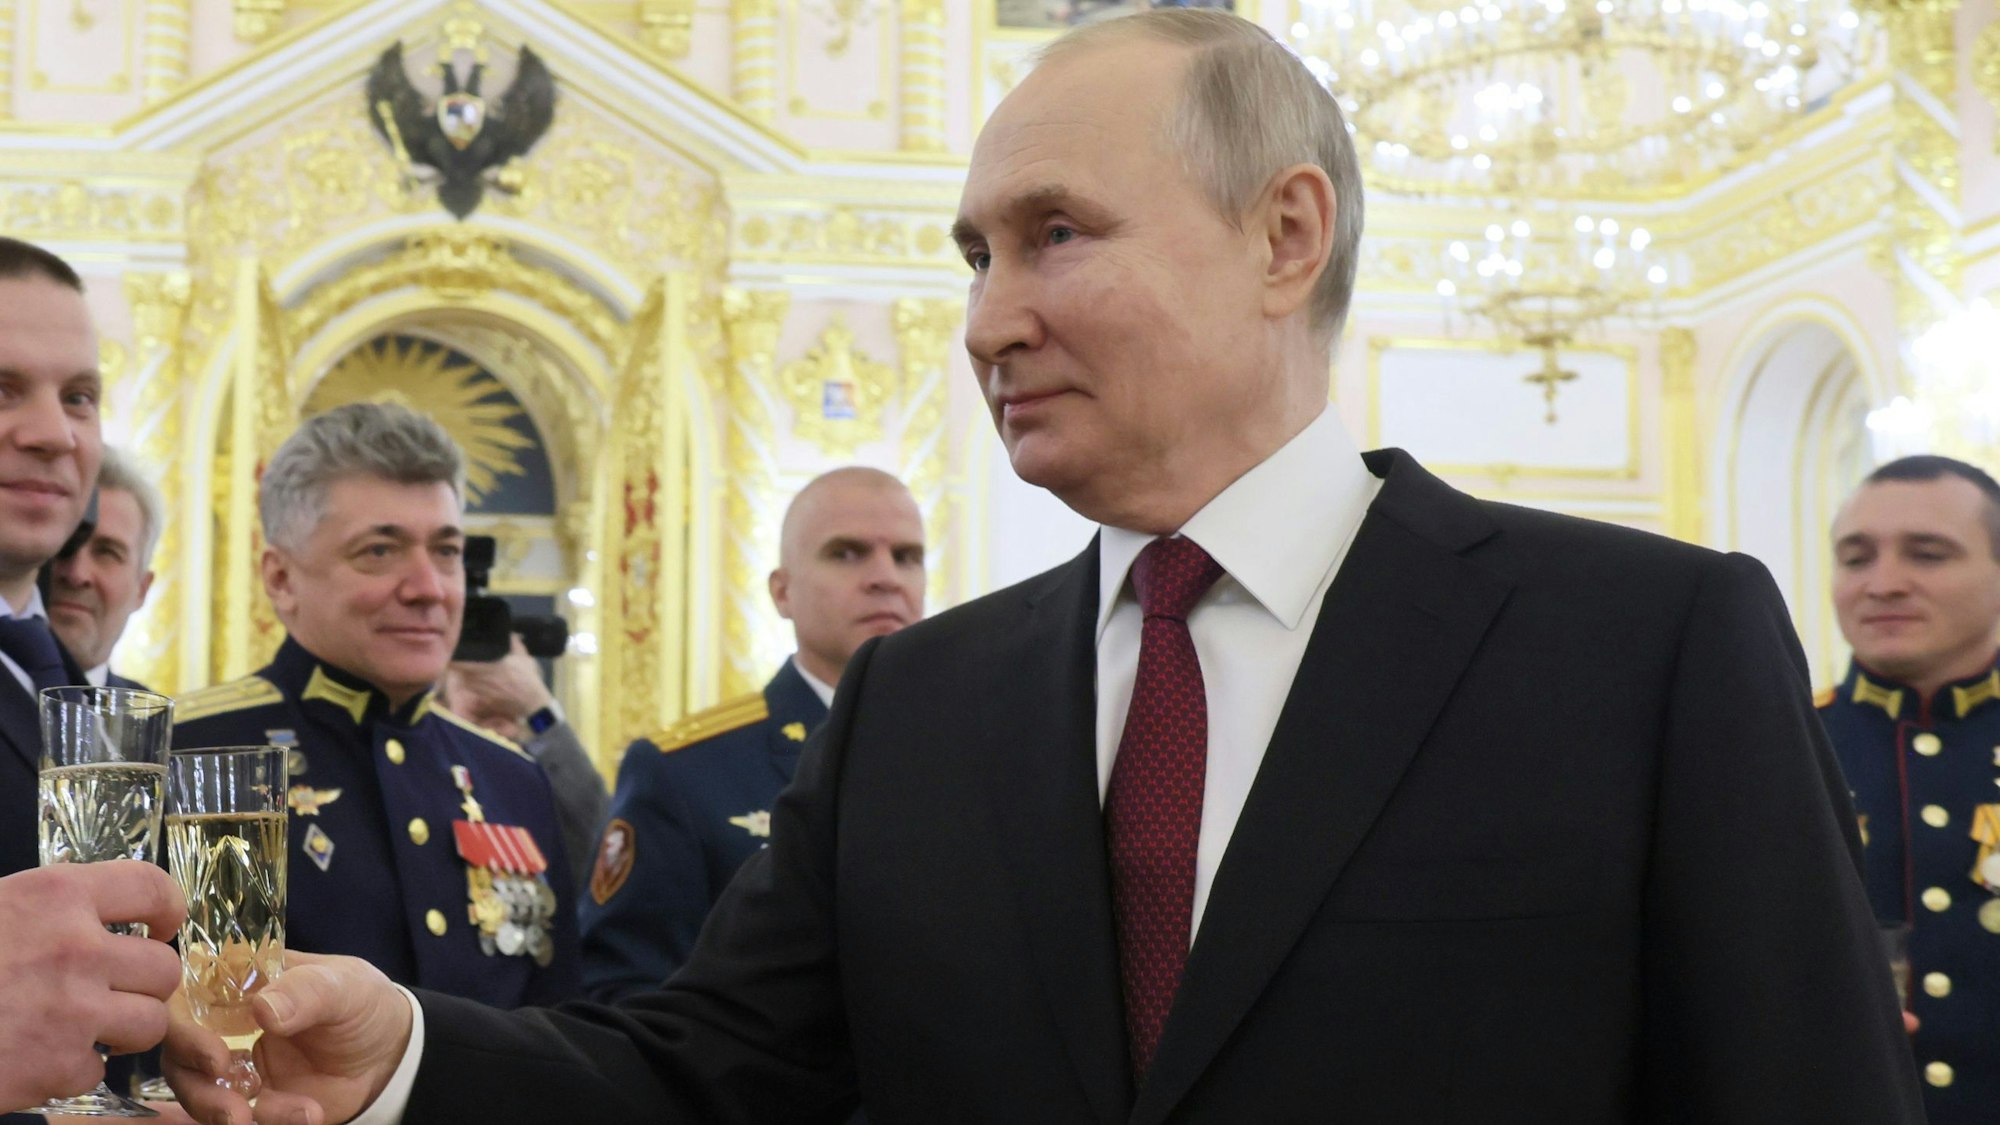 Der russische Staatspräsident Wladimir Putin beglückwünscht mehrere Personen während einer Zeremonie am Vorabend des Tages der Helden des Vaterlandes im Kreml. Er trägt einen Anzug und hat ein Champagner-Glas in der Hand.